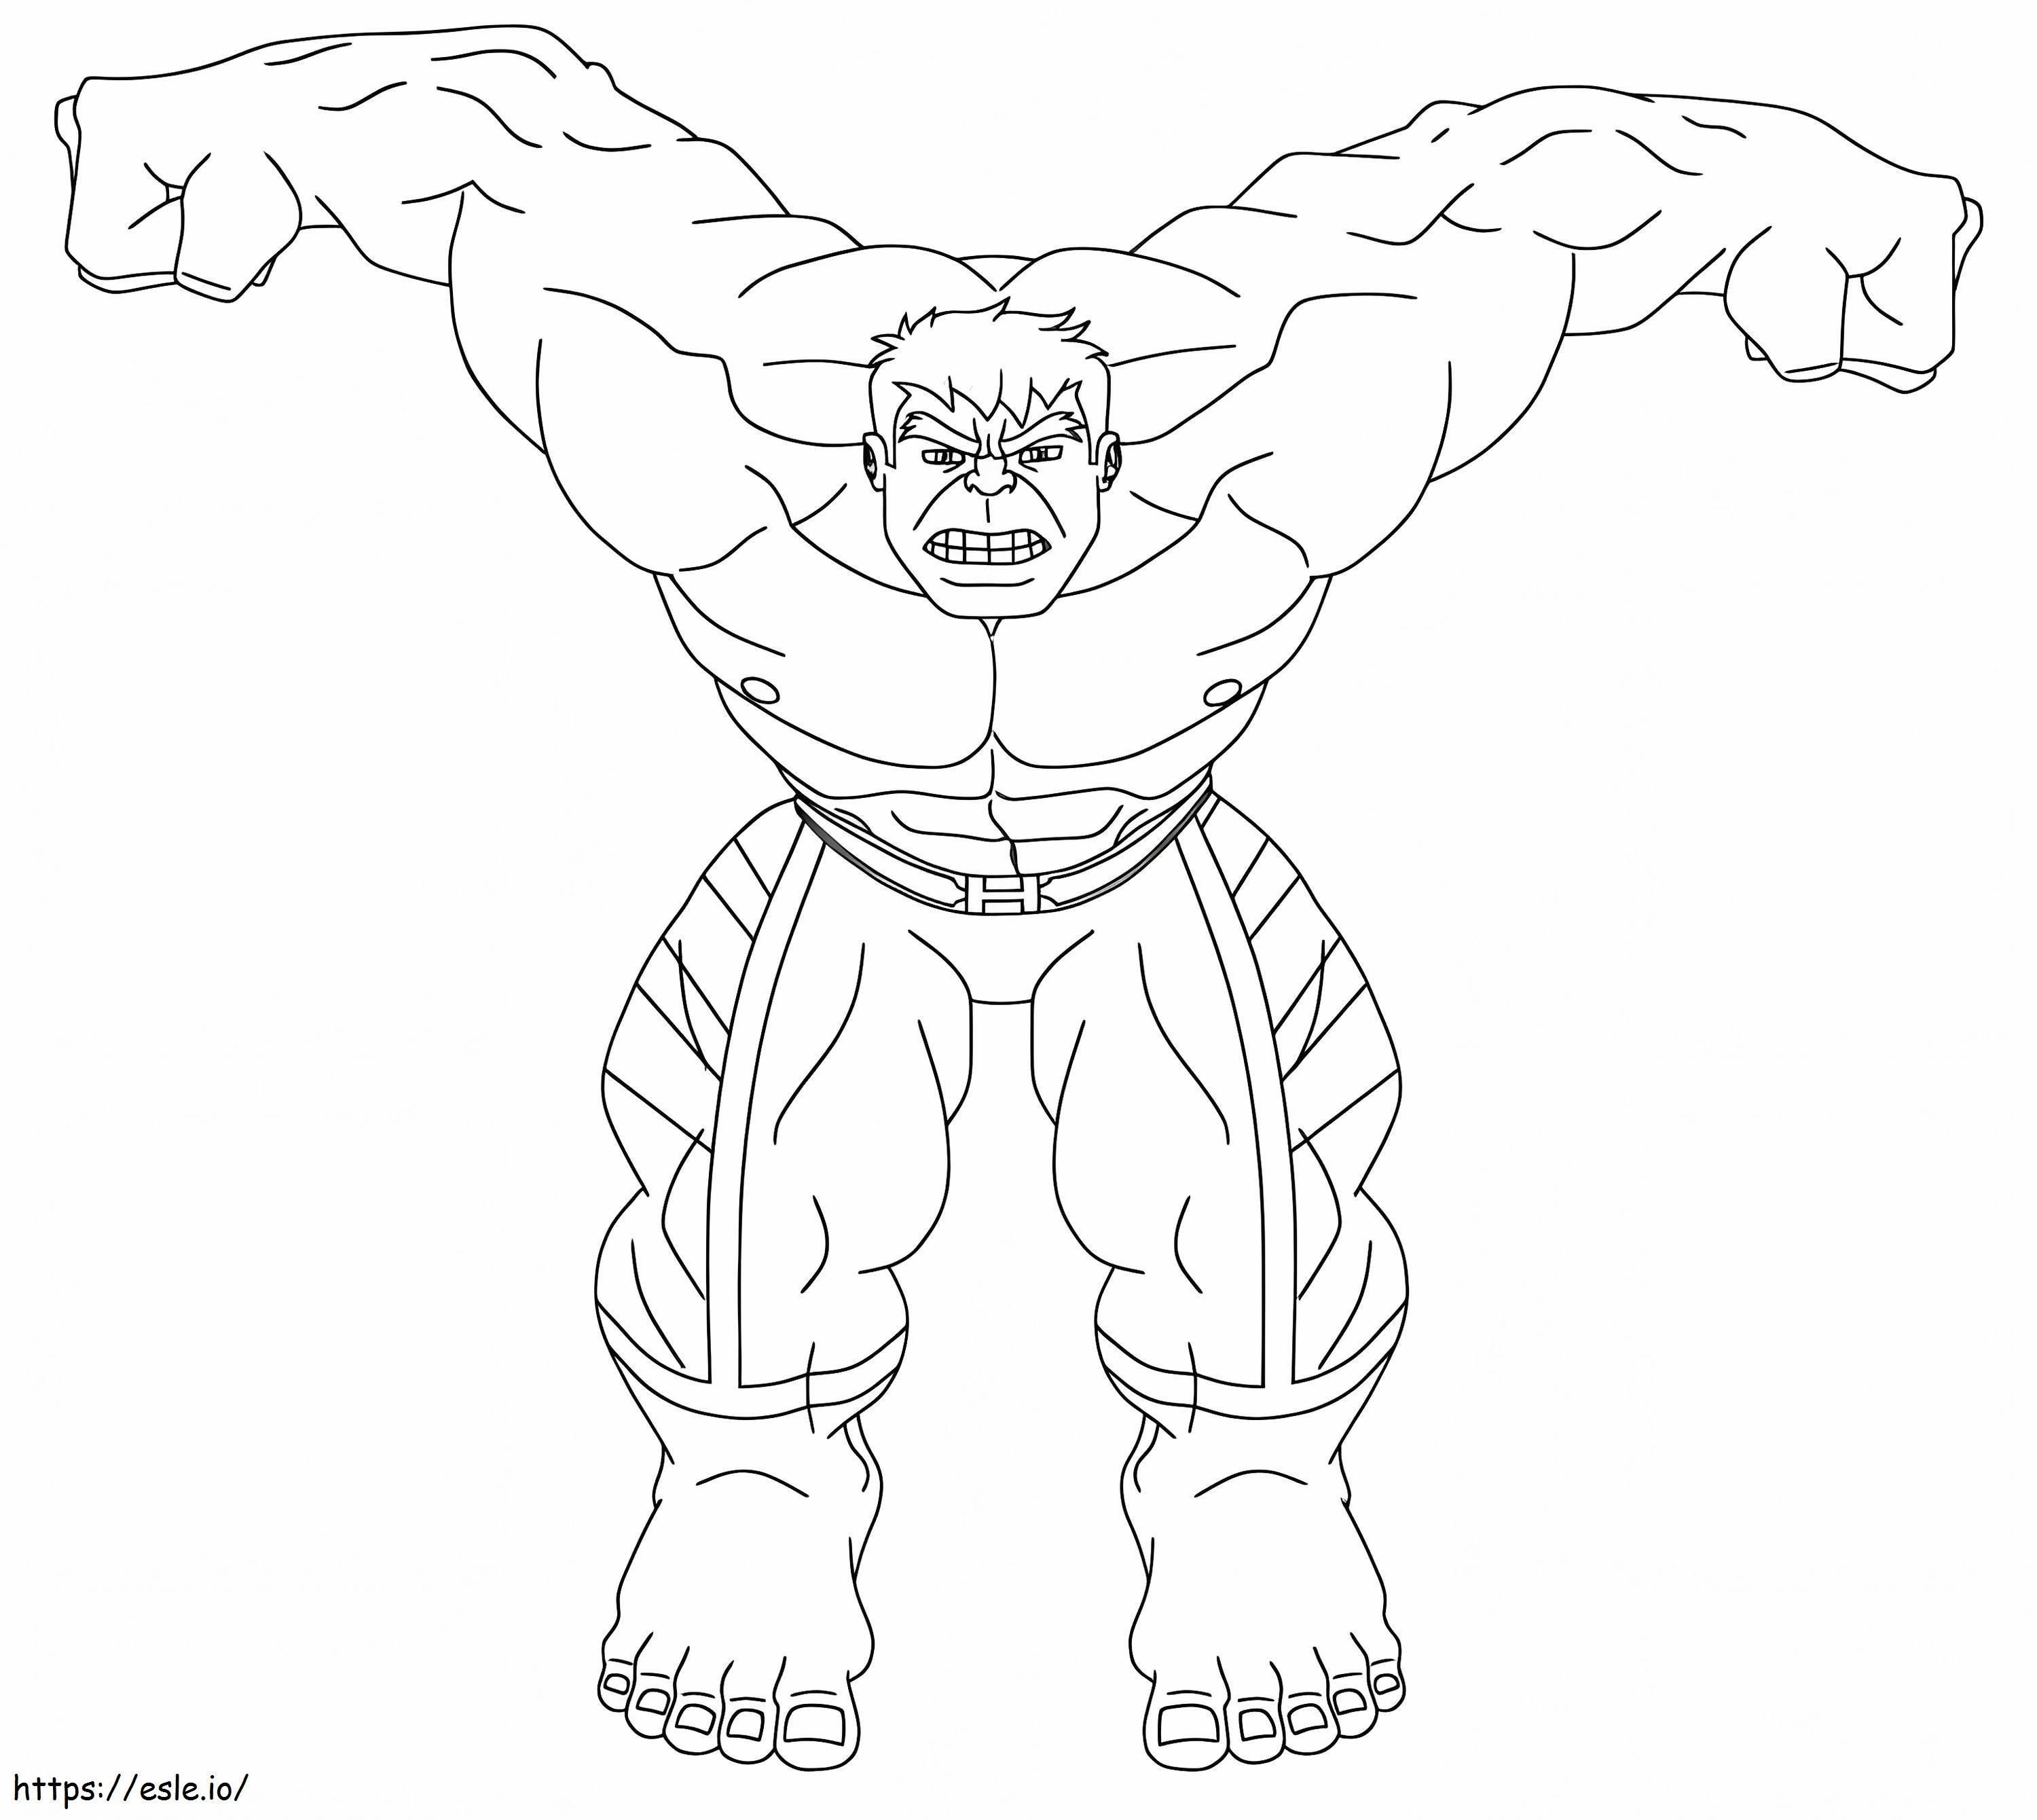 Hübscher Hulk ausmalbilder